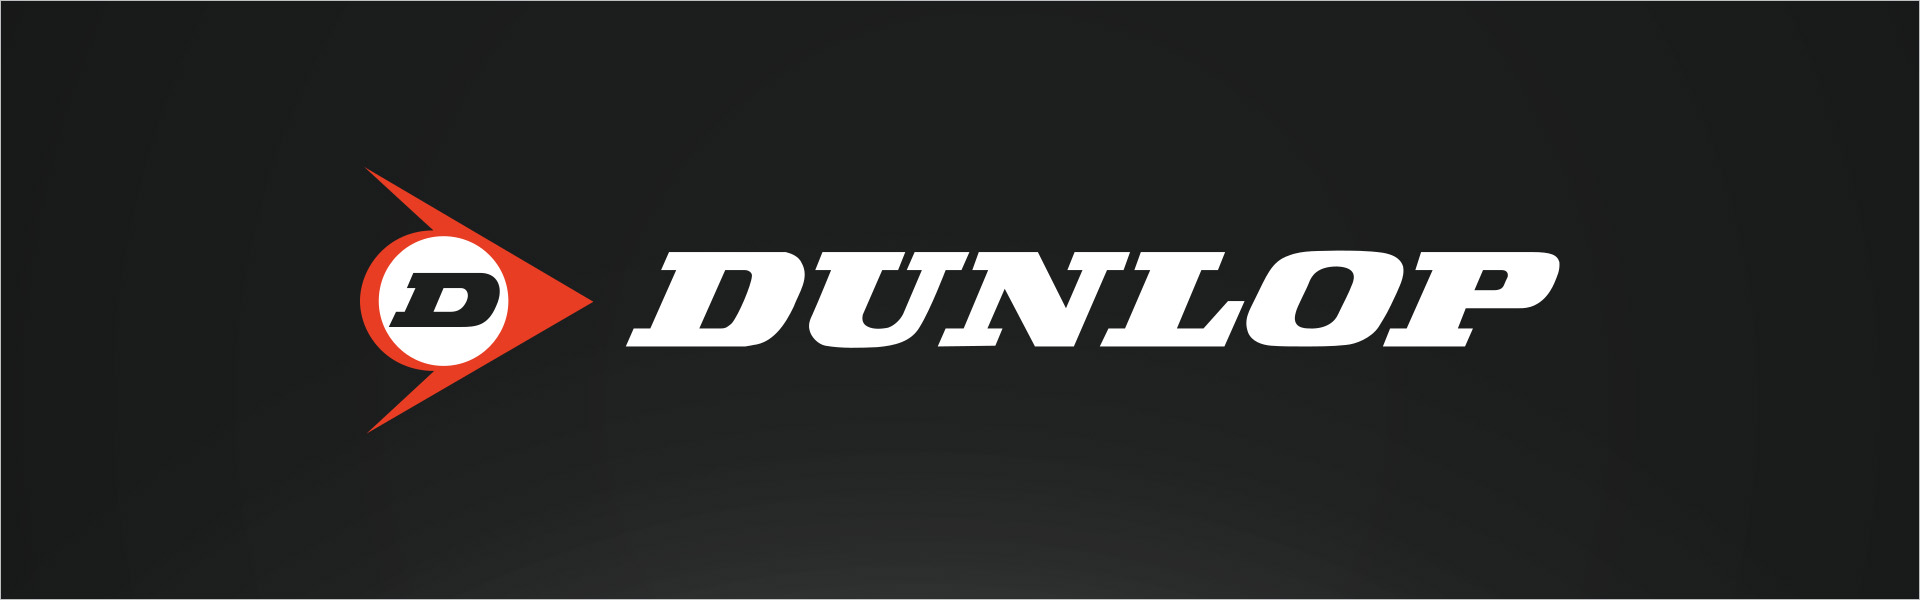 Dunlop SP SPORT 270 235/55R18 100 H Dunlop